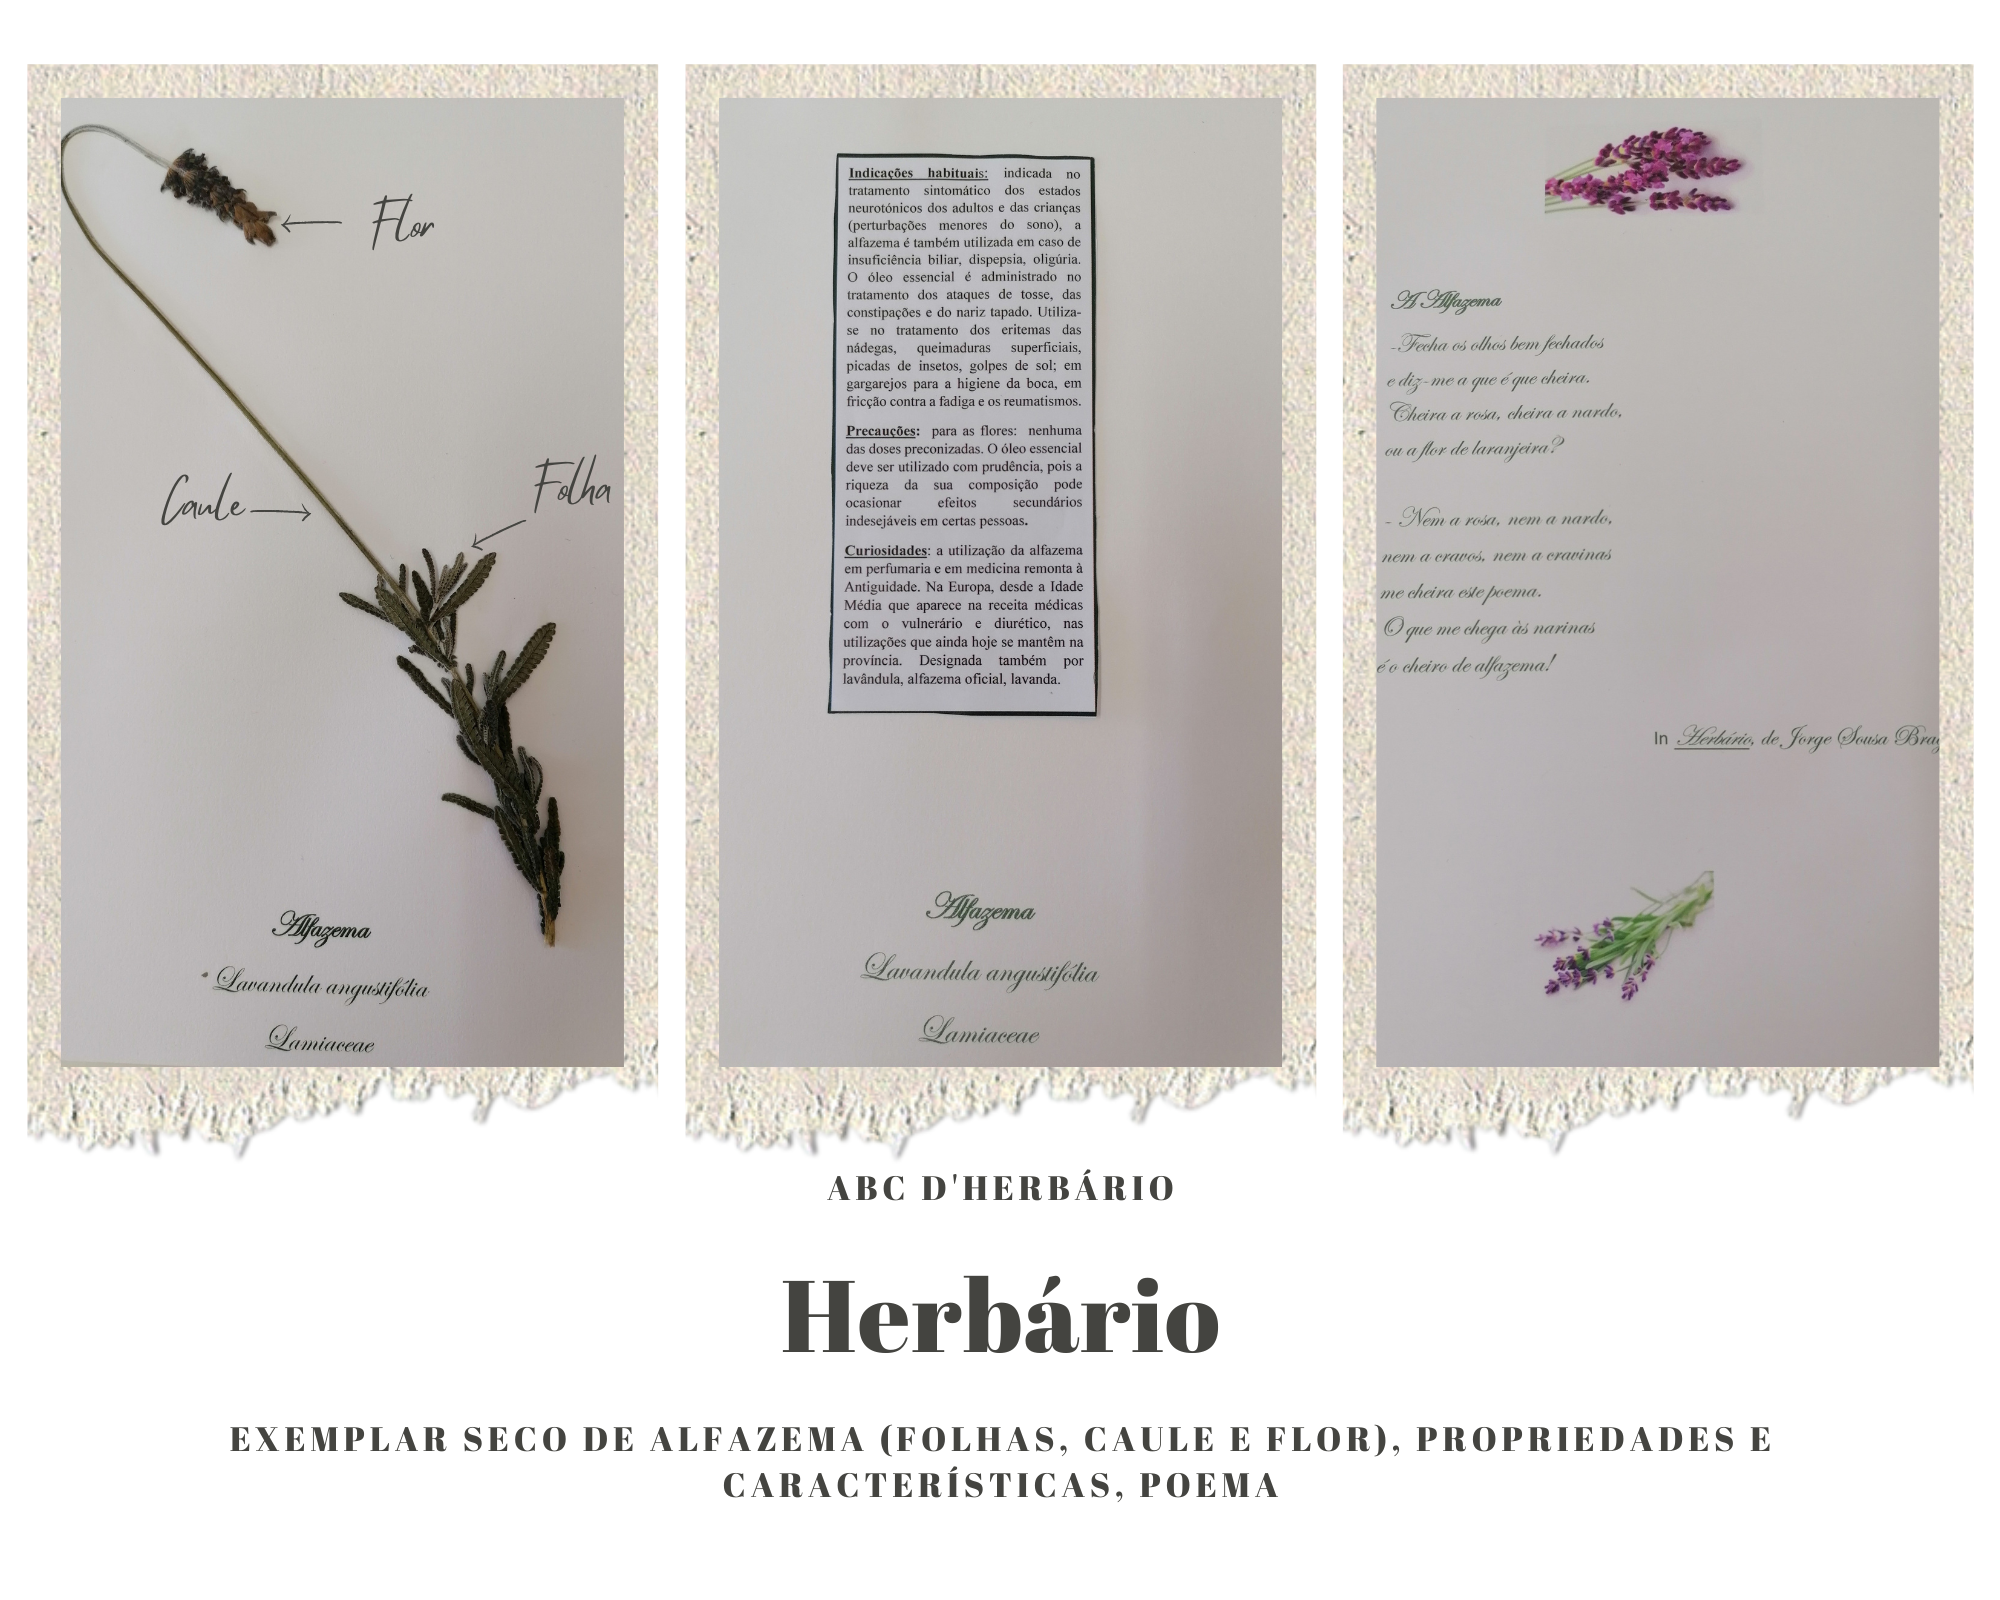 Exemplar seco de alfazema - Lavandula angustifolia (folhas, caule e flor), propriedades e características, poema